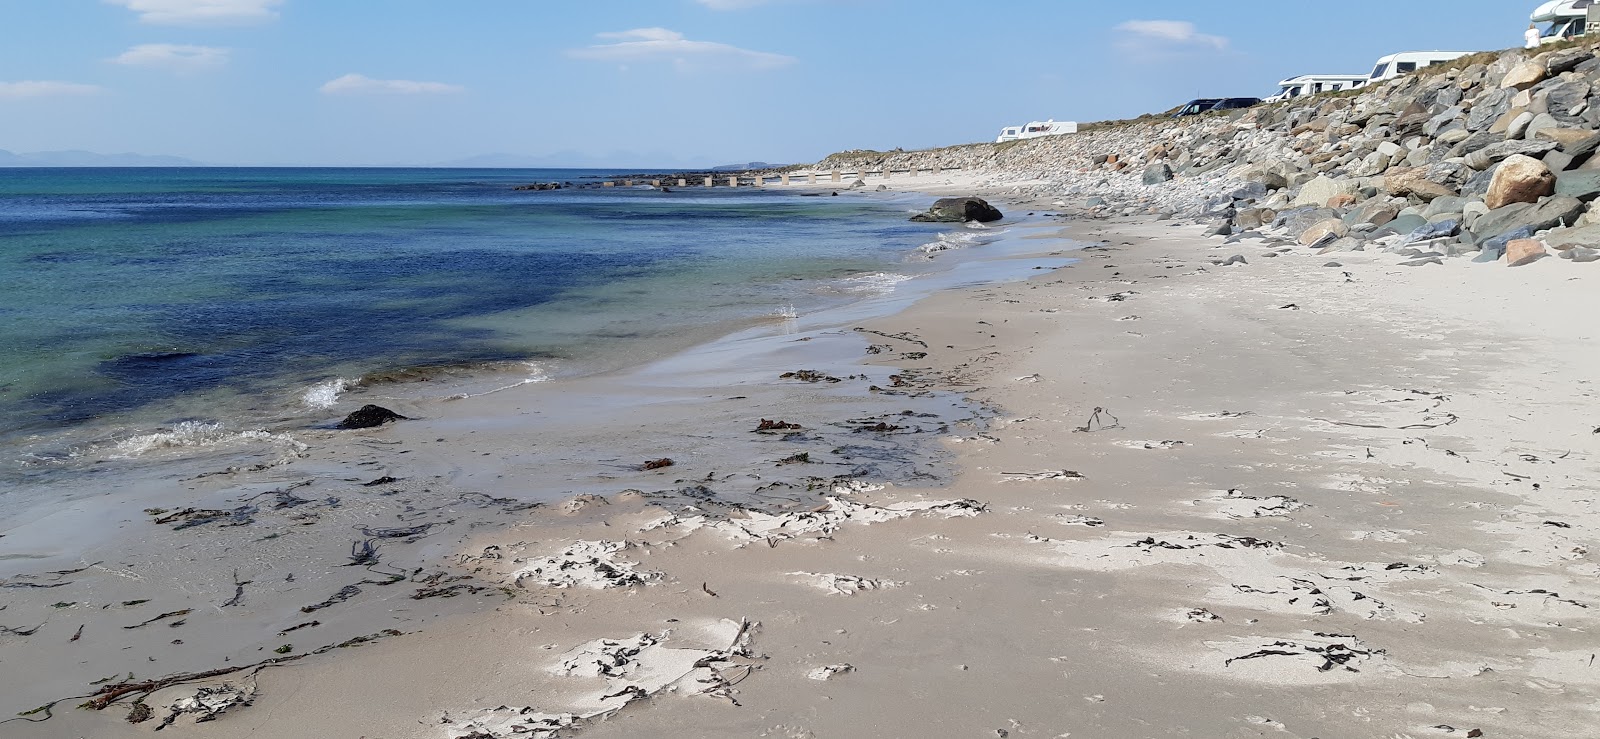 Foto de Killegruer Beach - lugar popular entre los conocedores del relax